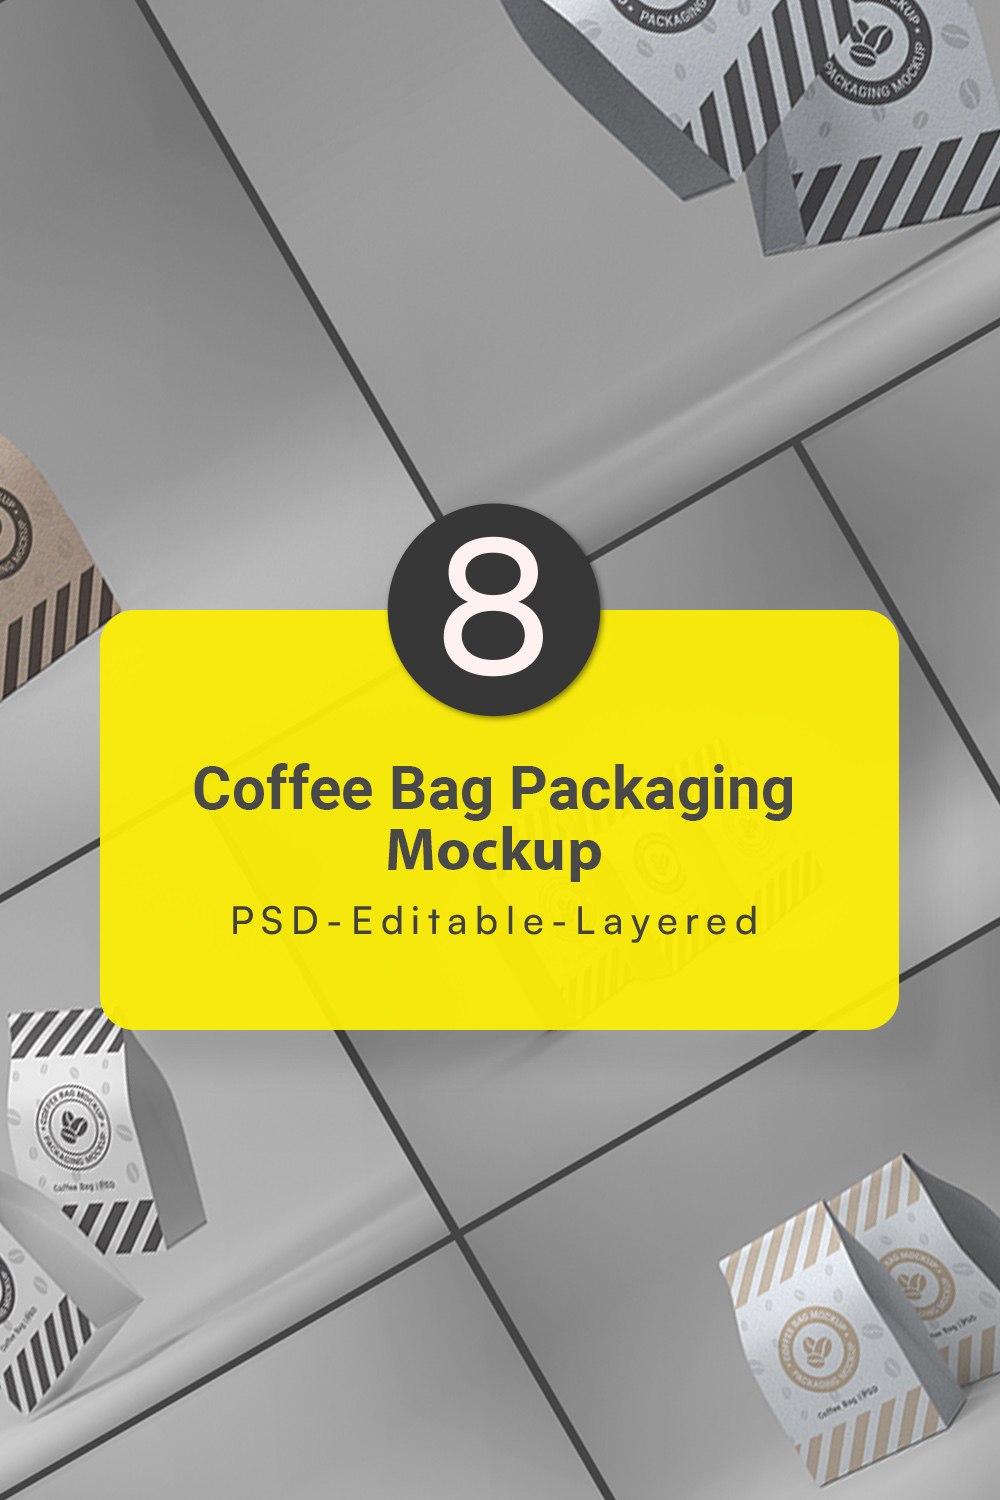 Coffee Packaging Bag Mockup pinterest image.